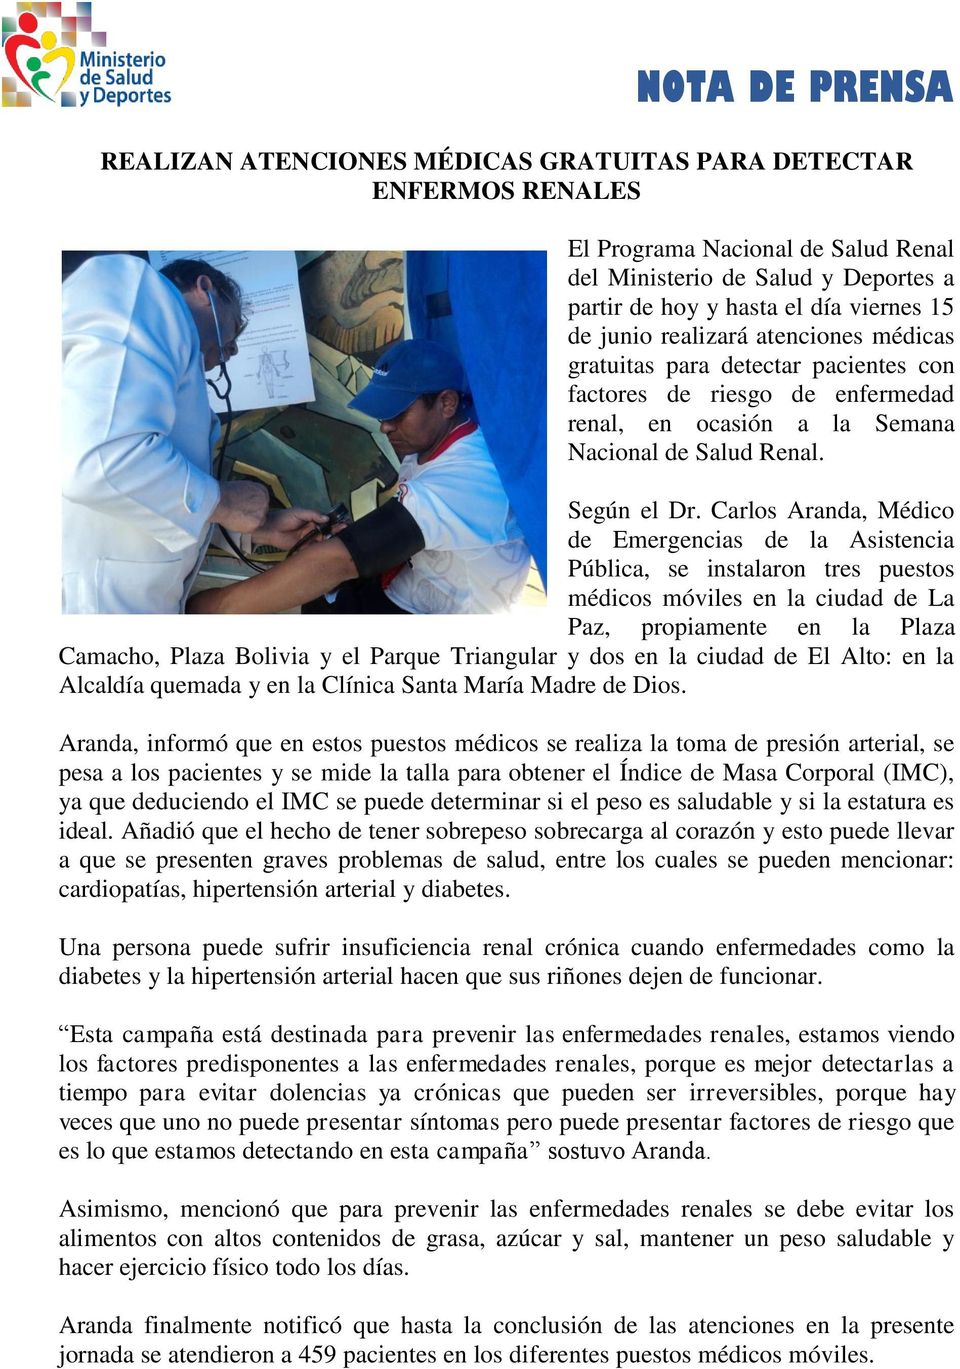 Carlos Aranda, Médico de Emergencias de la Asistencia Pública, se instalaron tres puestos médicos móviles en la ciudad de La Paz, propiamente en la Plaza Camacho, Plaza Bolivia y el Parque Triangular